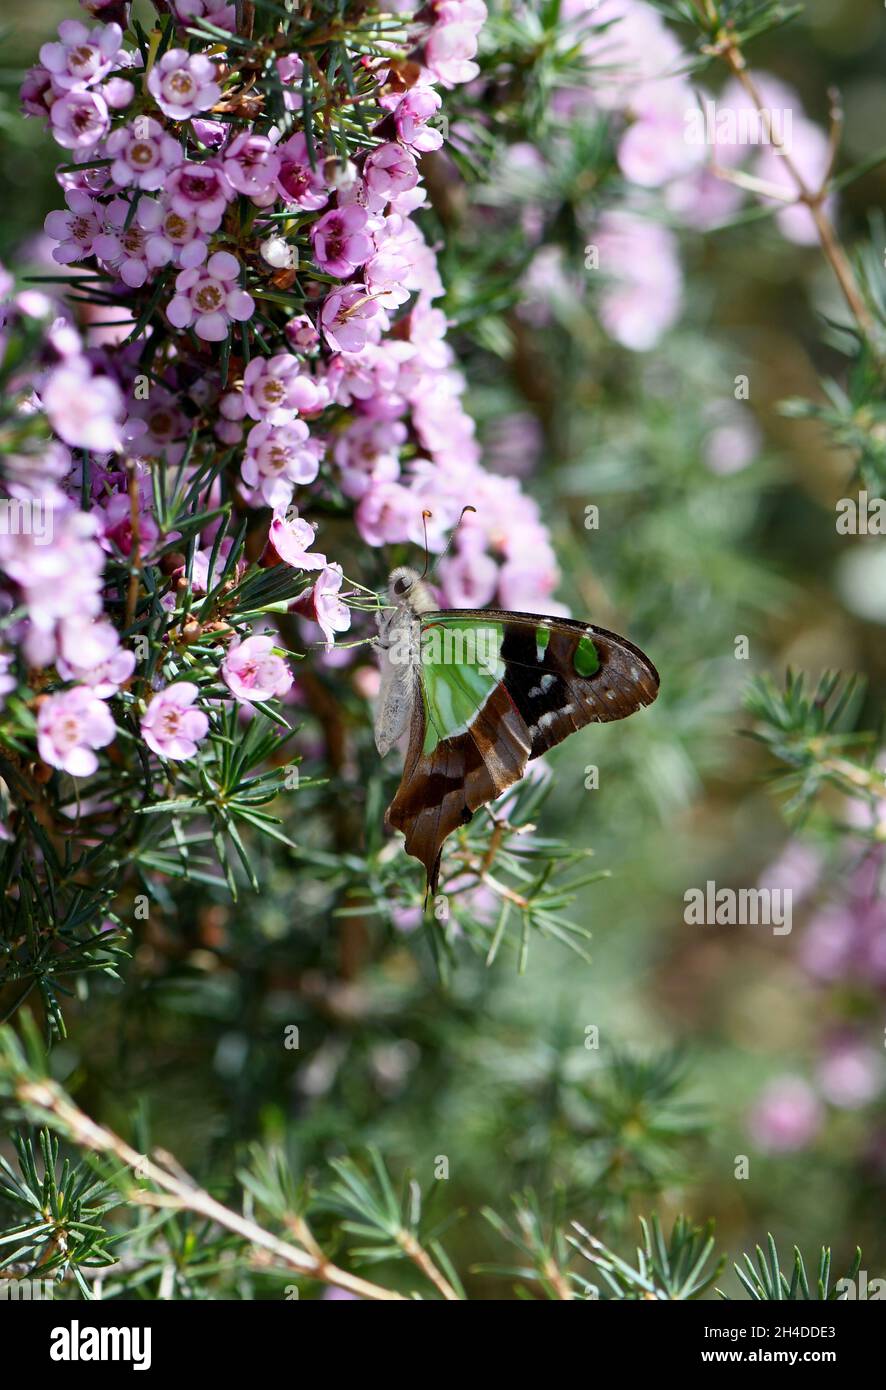 Mariposa de cola alada de Macleay, nativa australiana Graphium macleayanum, familia Papilionidae, se alimenta de flores de plumas rosadas en un jardín de Sydney Foto de stock